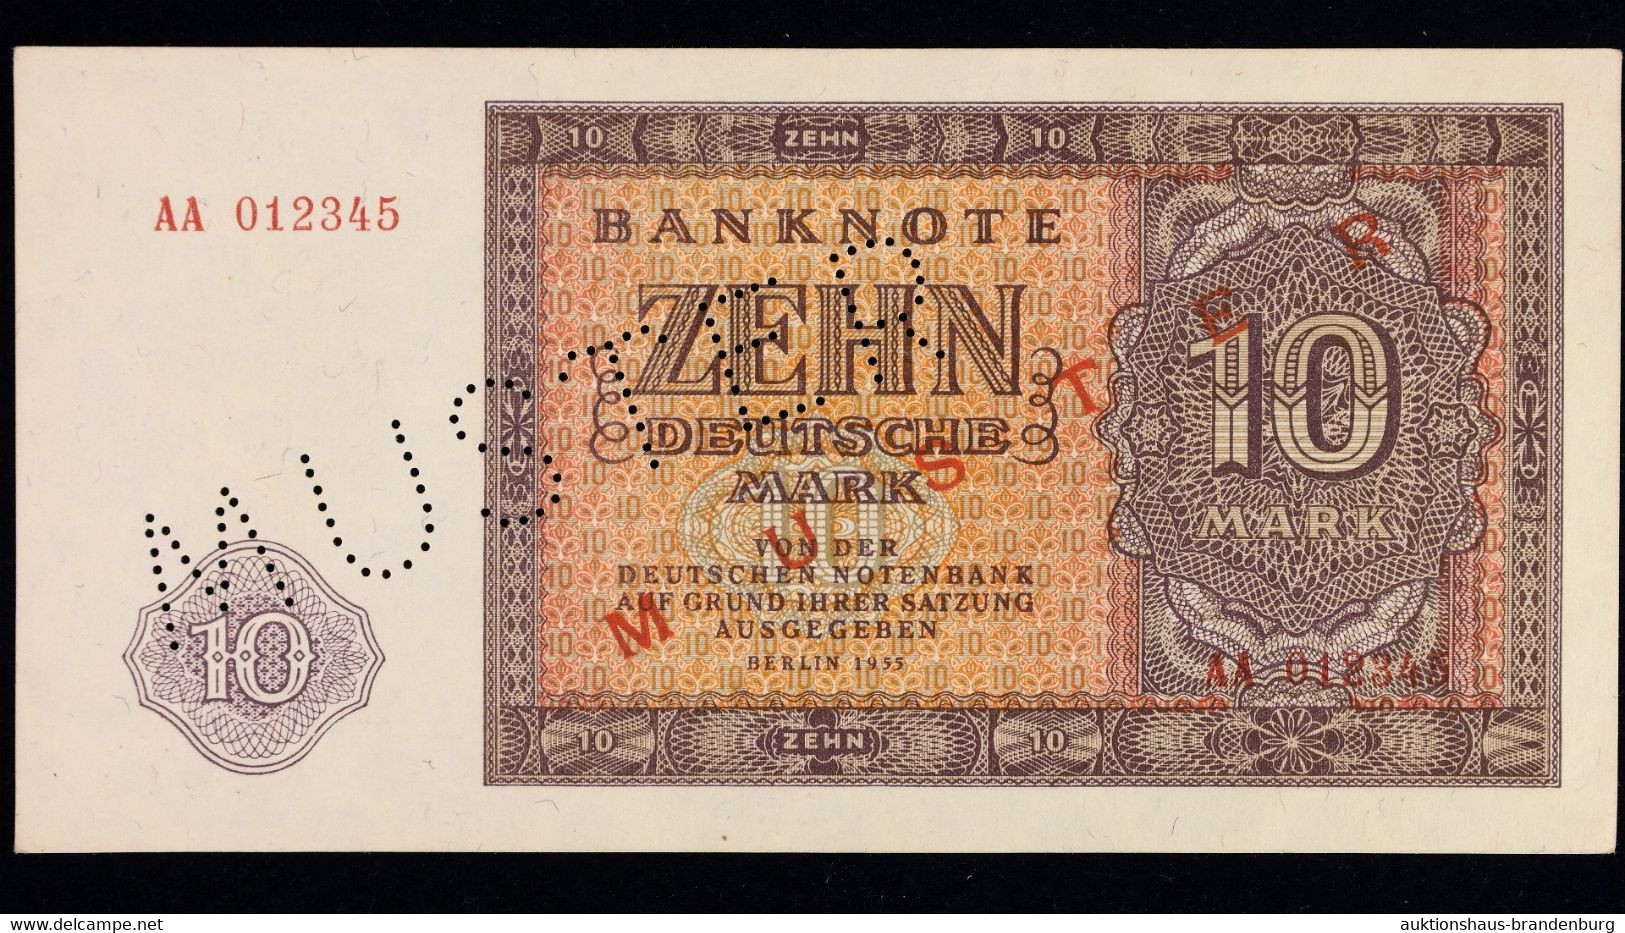 10 Und 20 Deutsche Mark Berlin DDR 1955 | MUSTERNOTEN | AA012345 + AA0123456 | DDR-12M1 + DDR-13M1 | Sehr Guter Zustand! - Collections